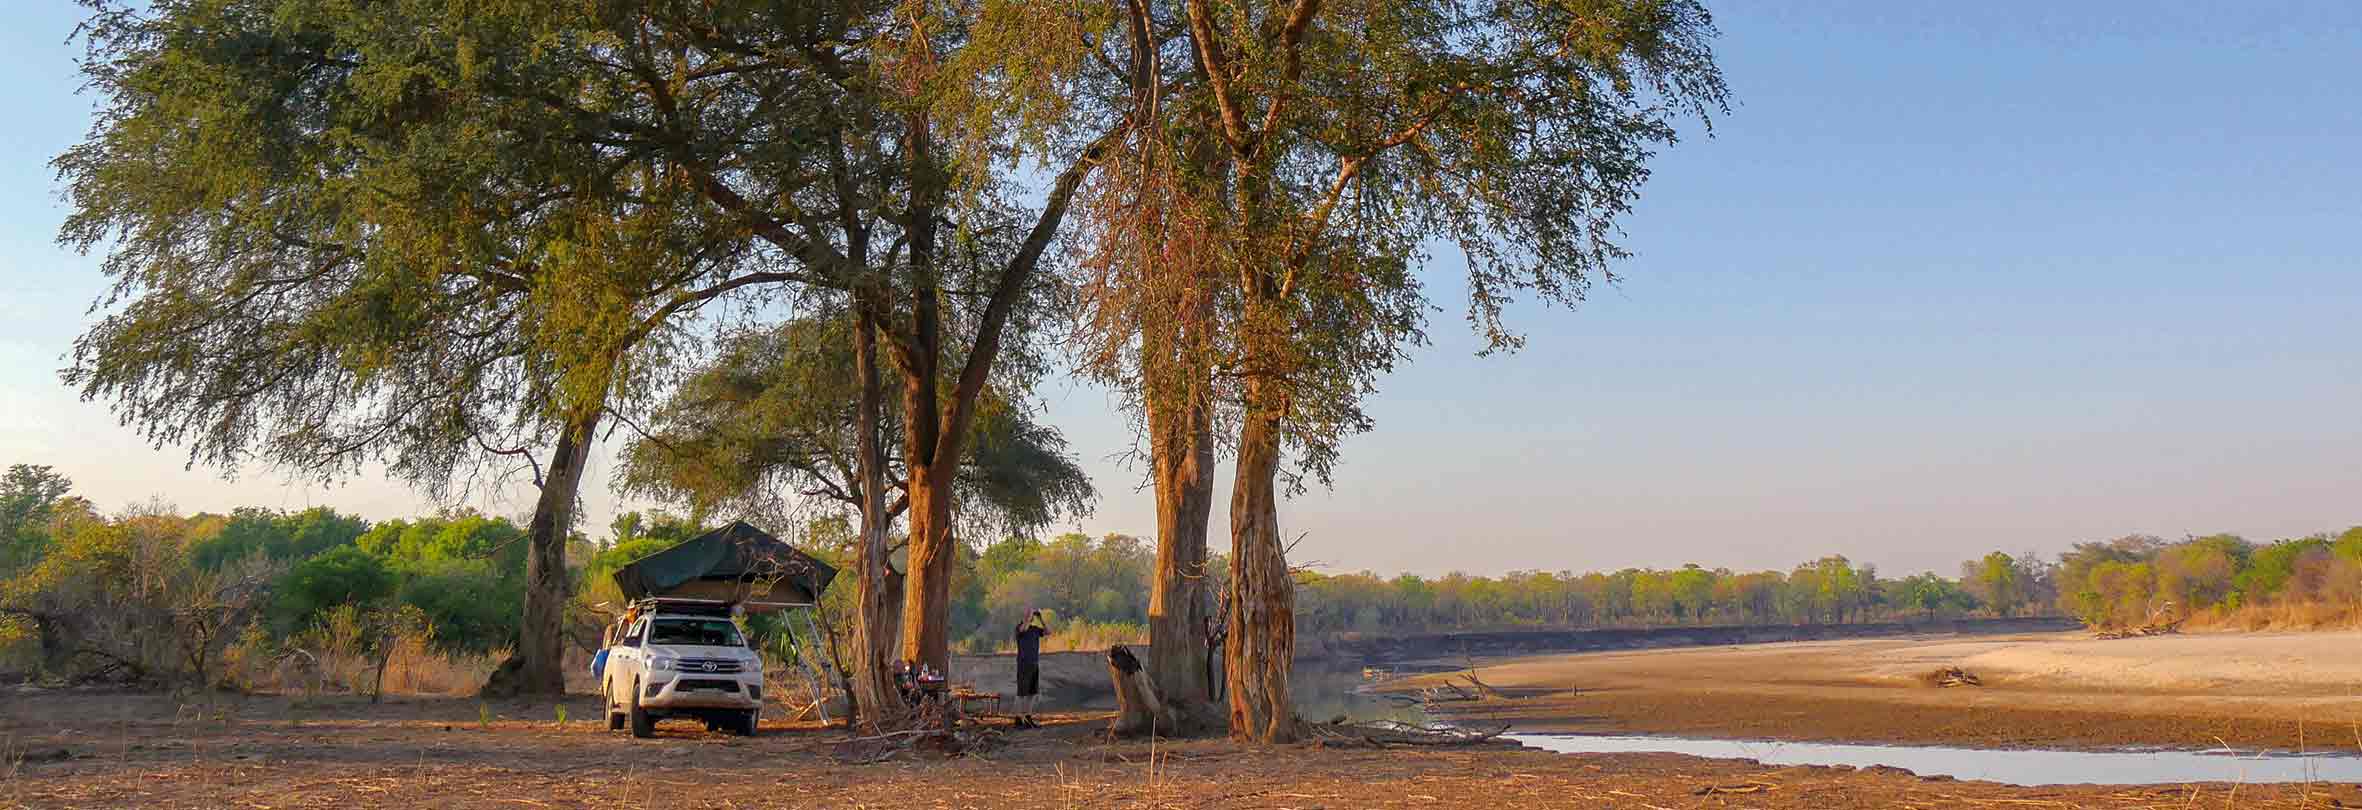 Gemütliches Camp inmitten der Natur, Zambia